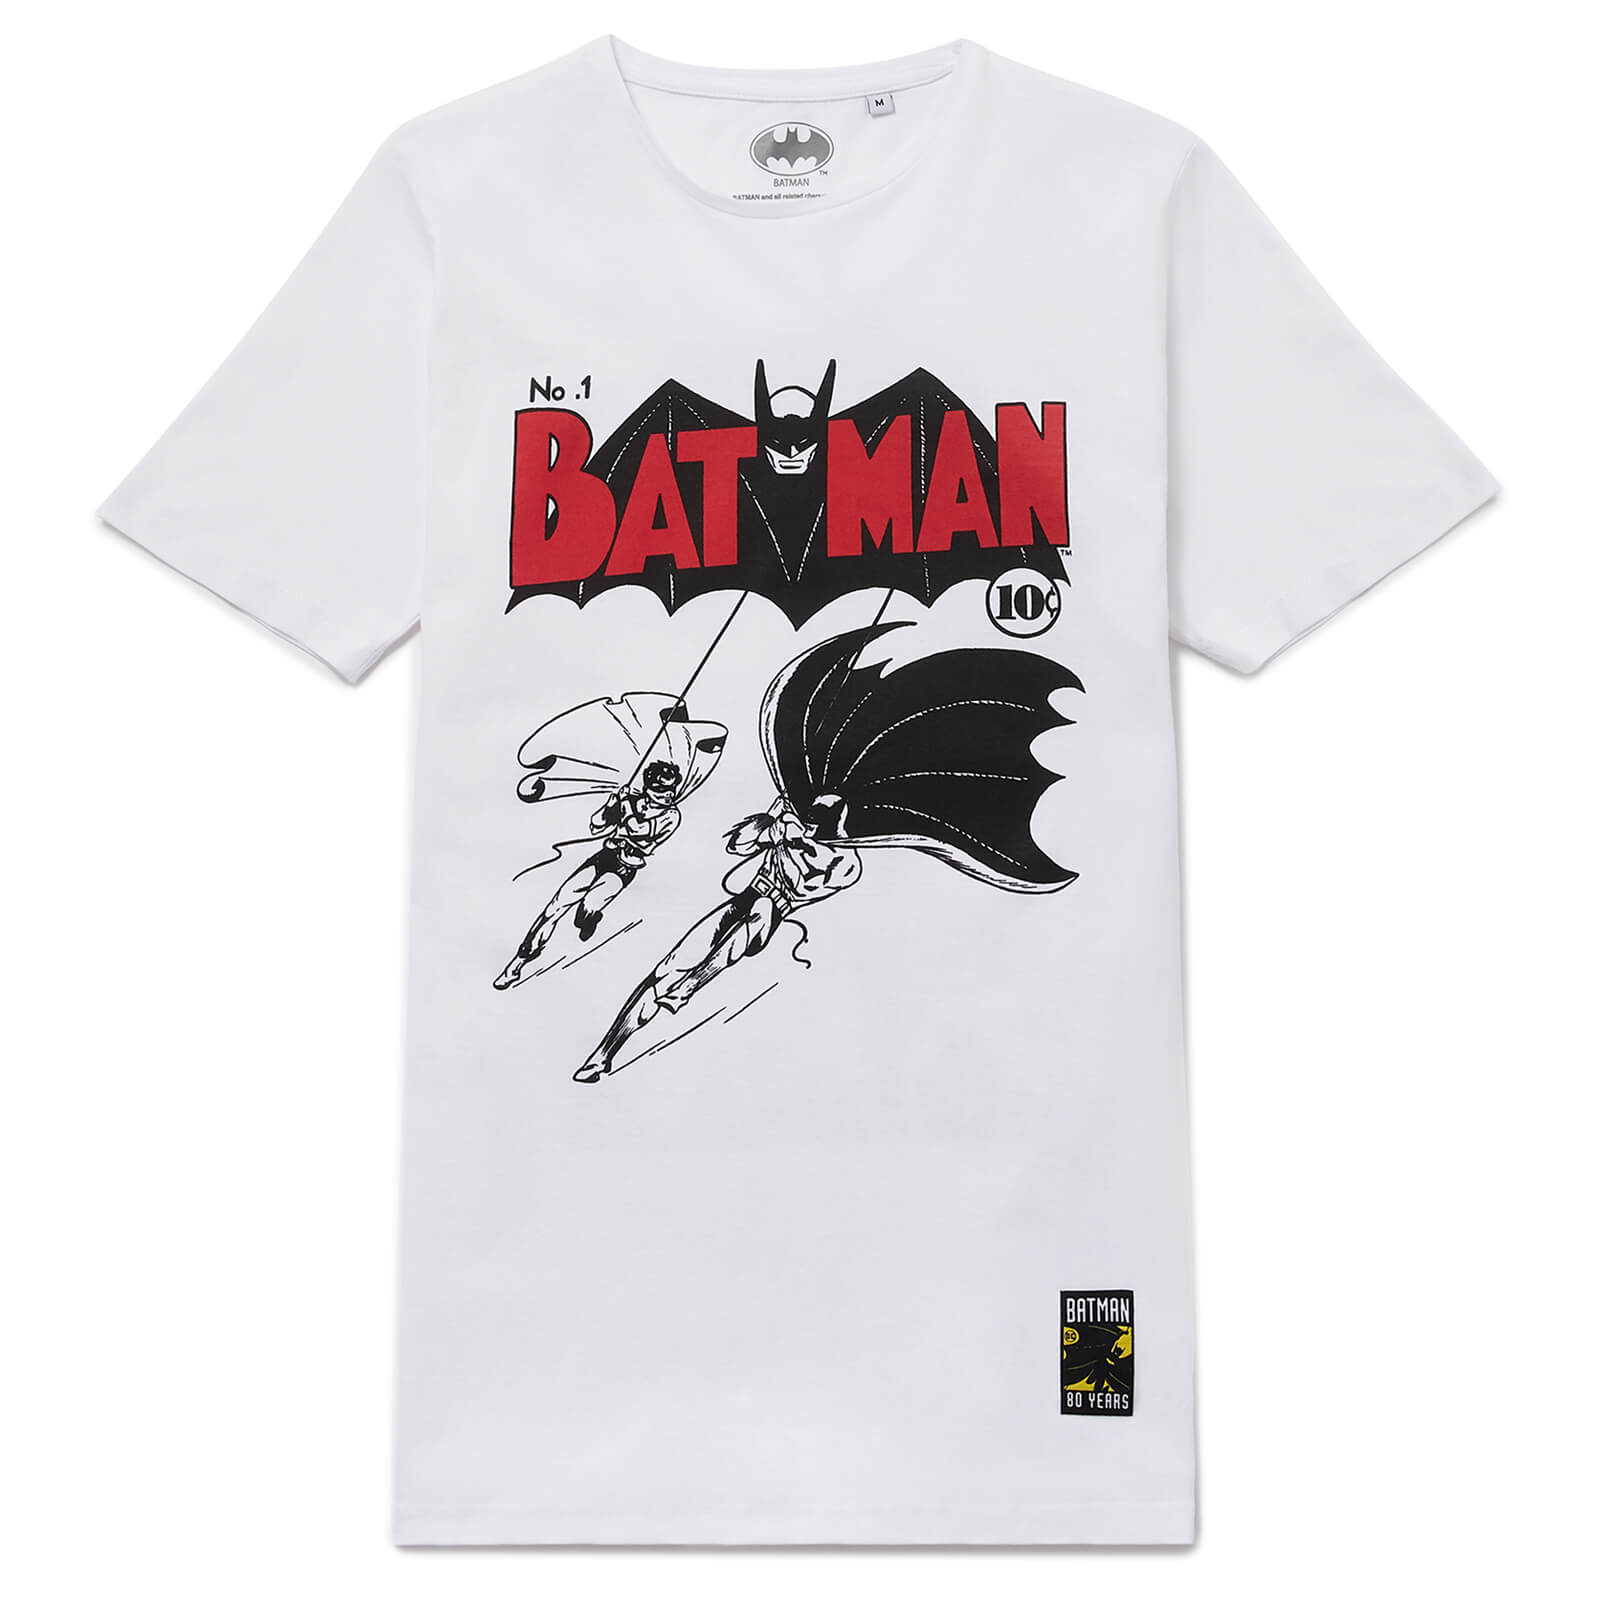 Batman 80th Anniversary 40s Legend T-Shirt - White - M - White